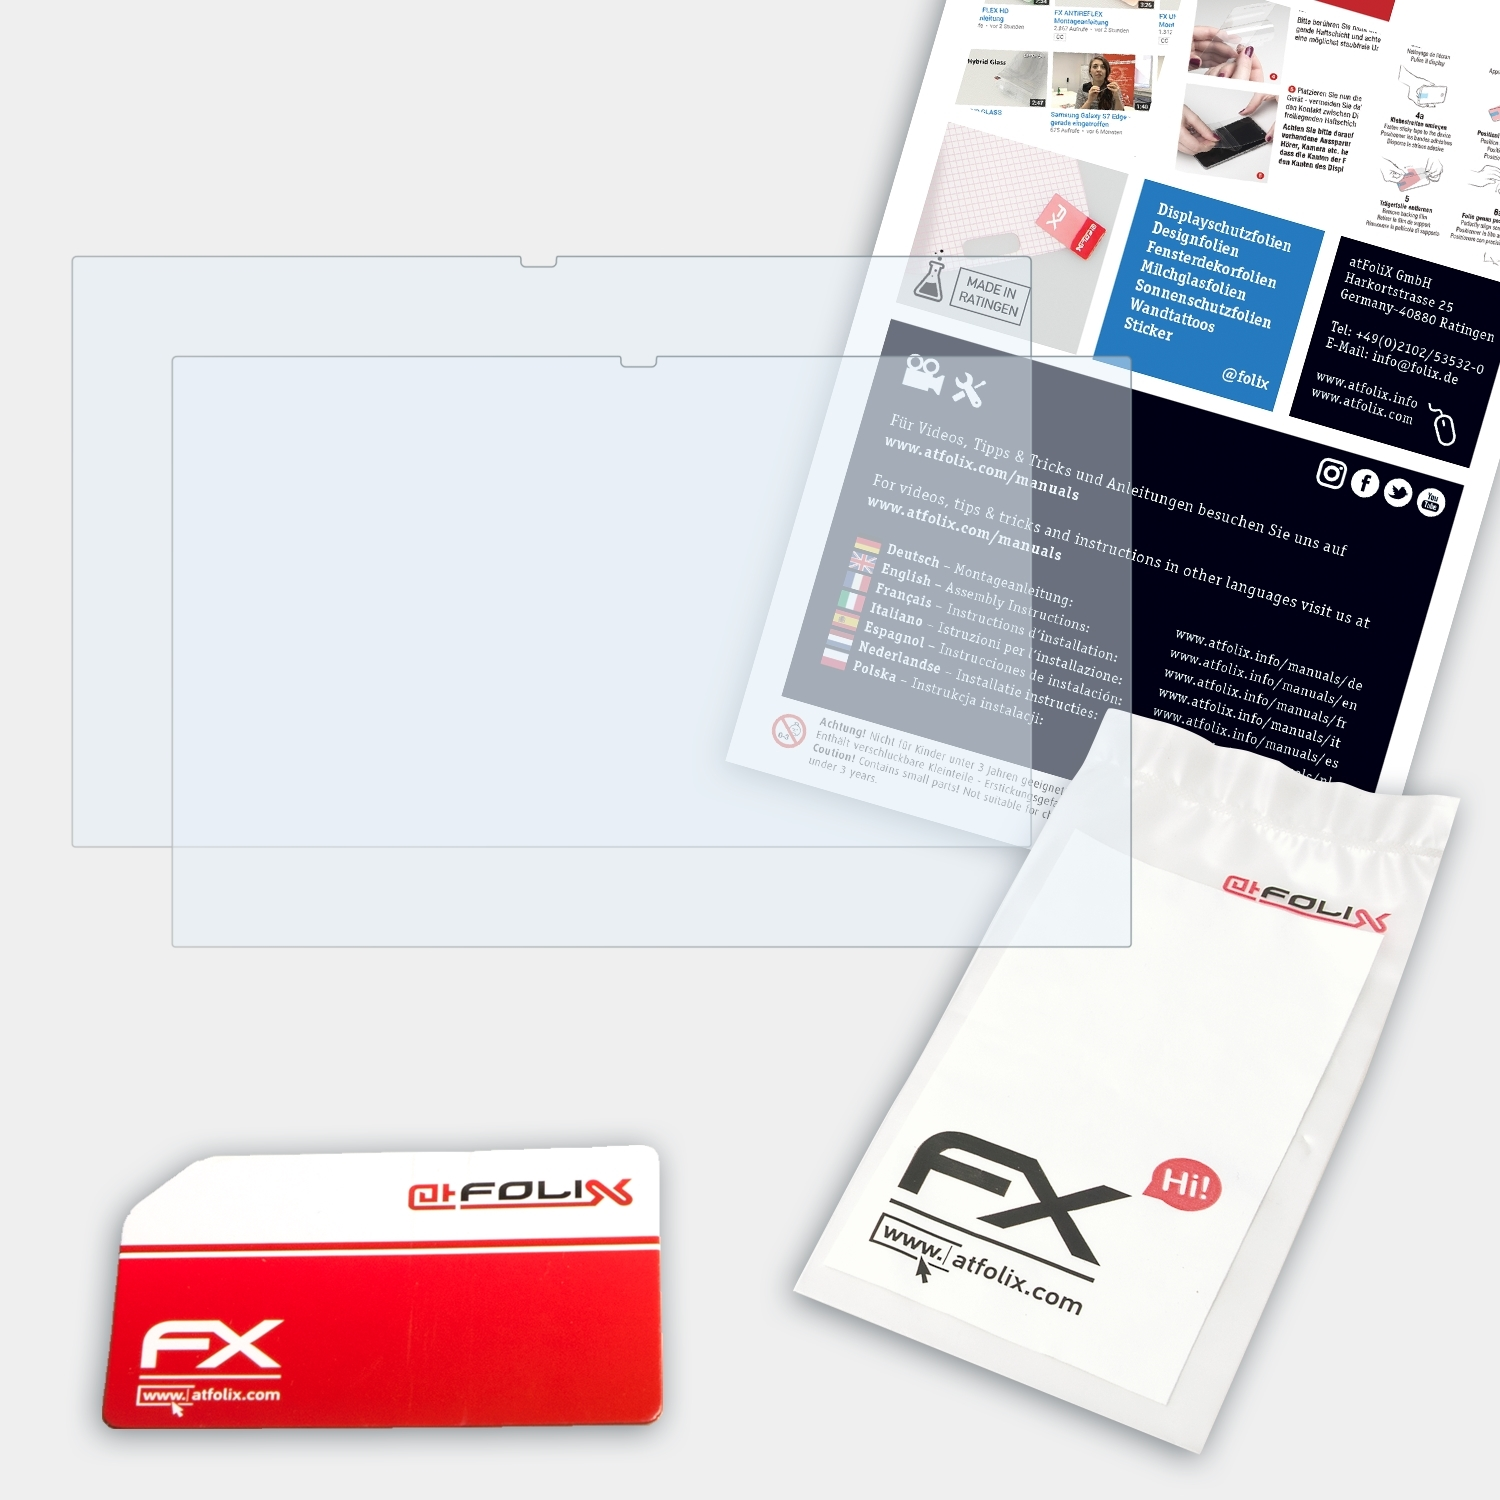 Galaxy Book inch)) Flex ATFOLIX (13 2x Samsung Displayschutz(für FX-Clear